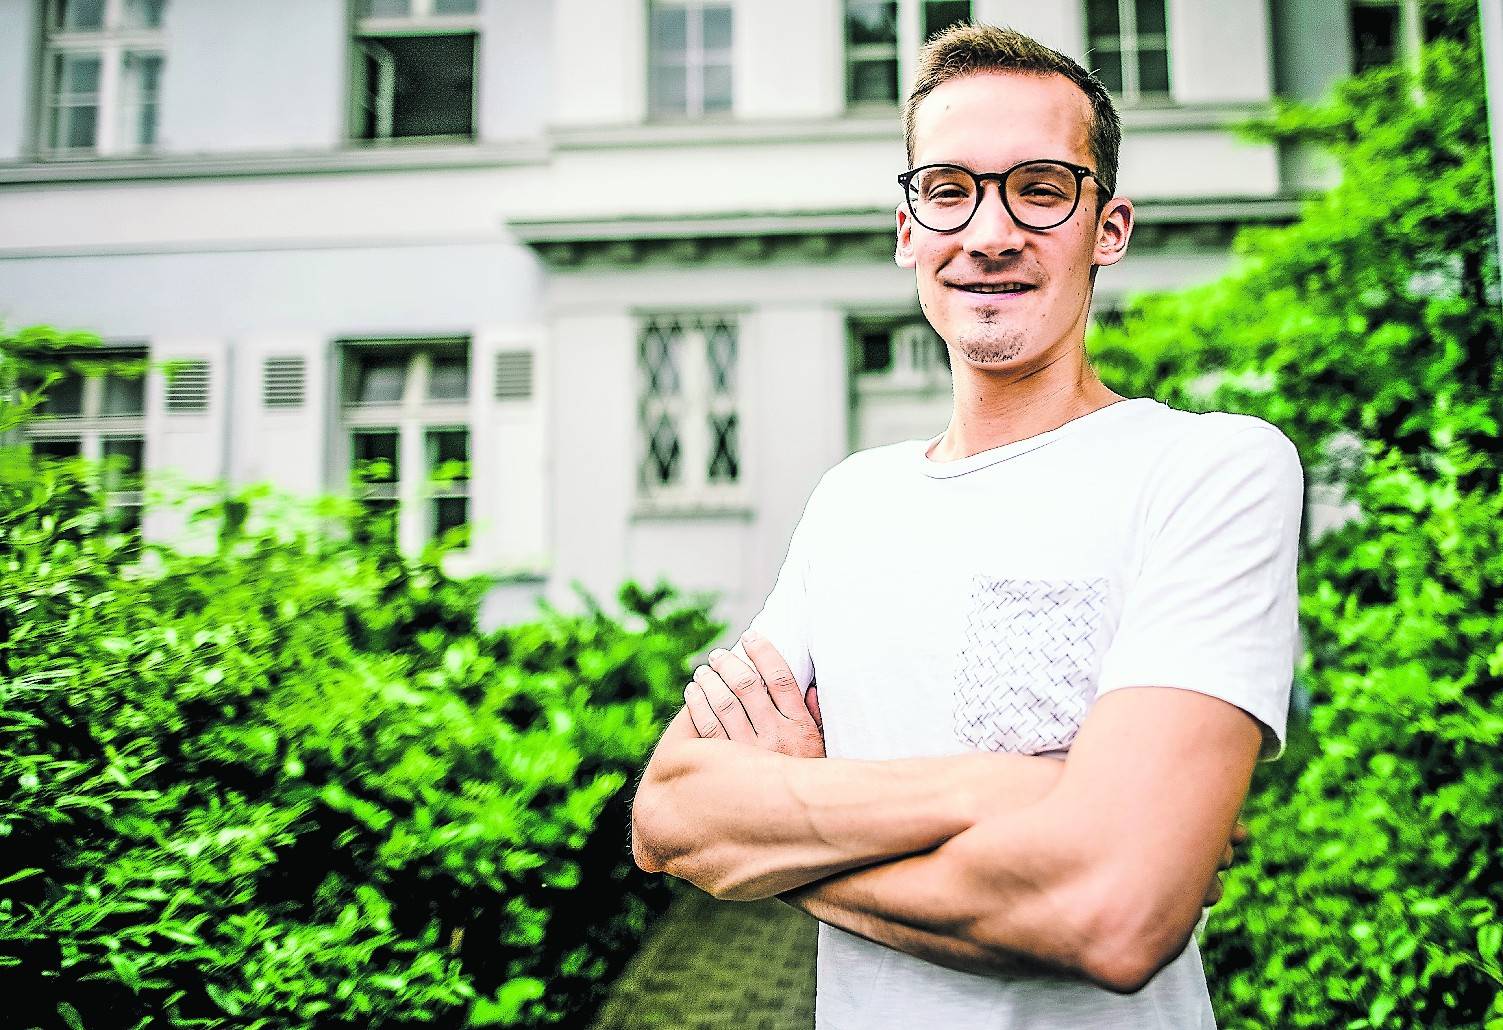 Konzertfilm als Abschlussarbeit: Tobias Kemper (26) begleitete den Chor der Universität Düsseldorf auf eine dreiwöchige Asien-Tour. Der Film „Symphonie der Stimmen“ ist seine Bachelorarbeit.